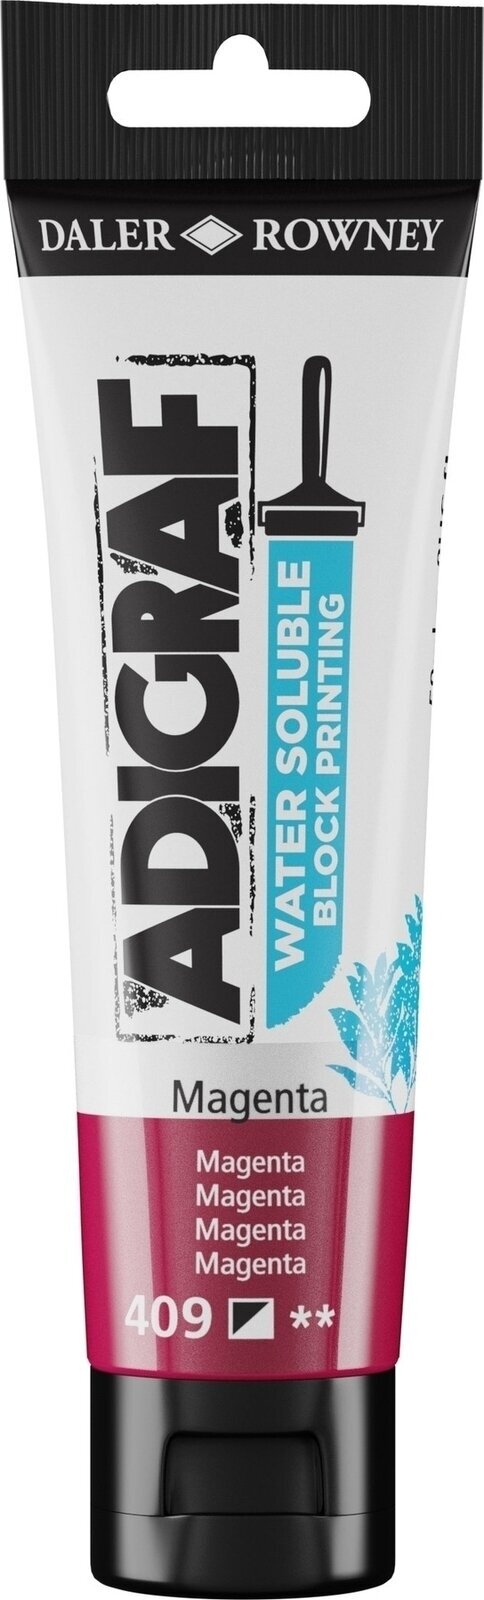 Verf voor linosnede Daler Rowney Adigraf Block Printing Water Soluble Colour Verf voor linosnede Magenta 59 ml